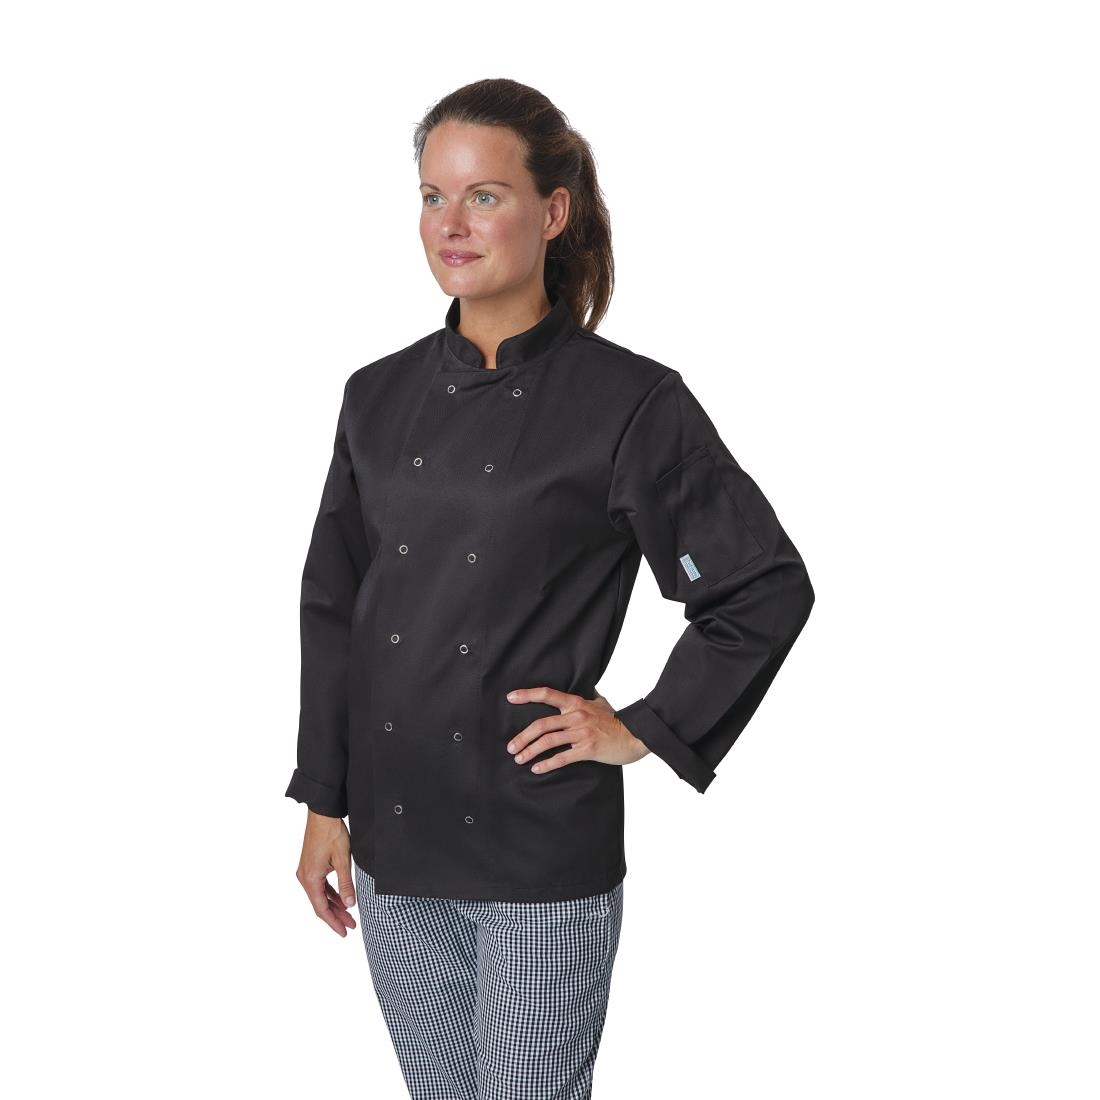 Whites Vegas Unisex Chefs Jacket Long Sleeve Black 4XL